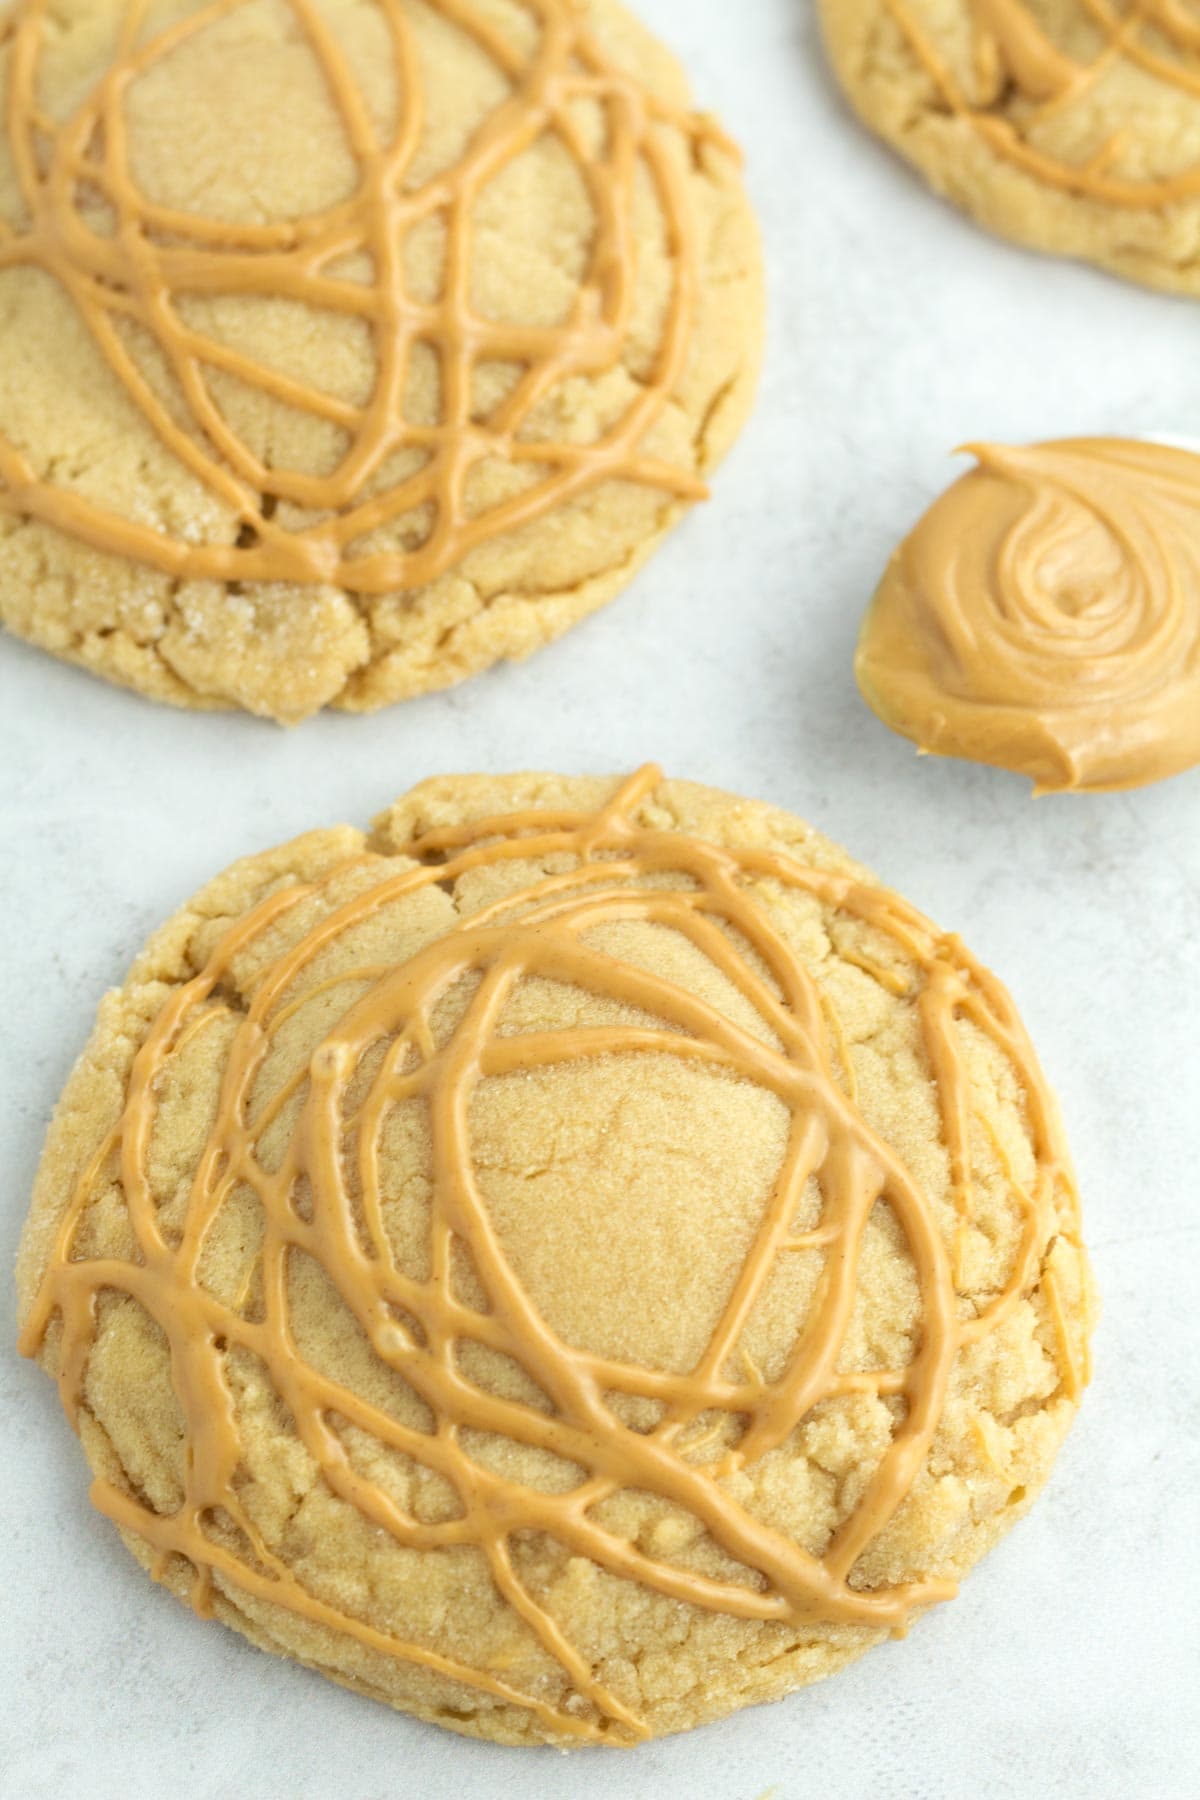 Crumbl peanut butter cookie recipe